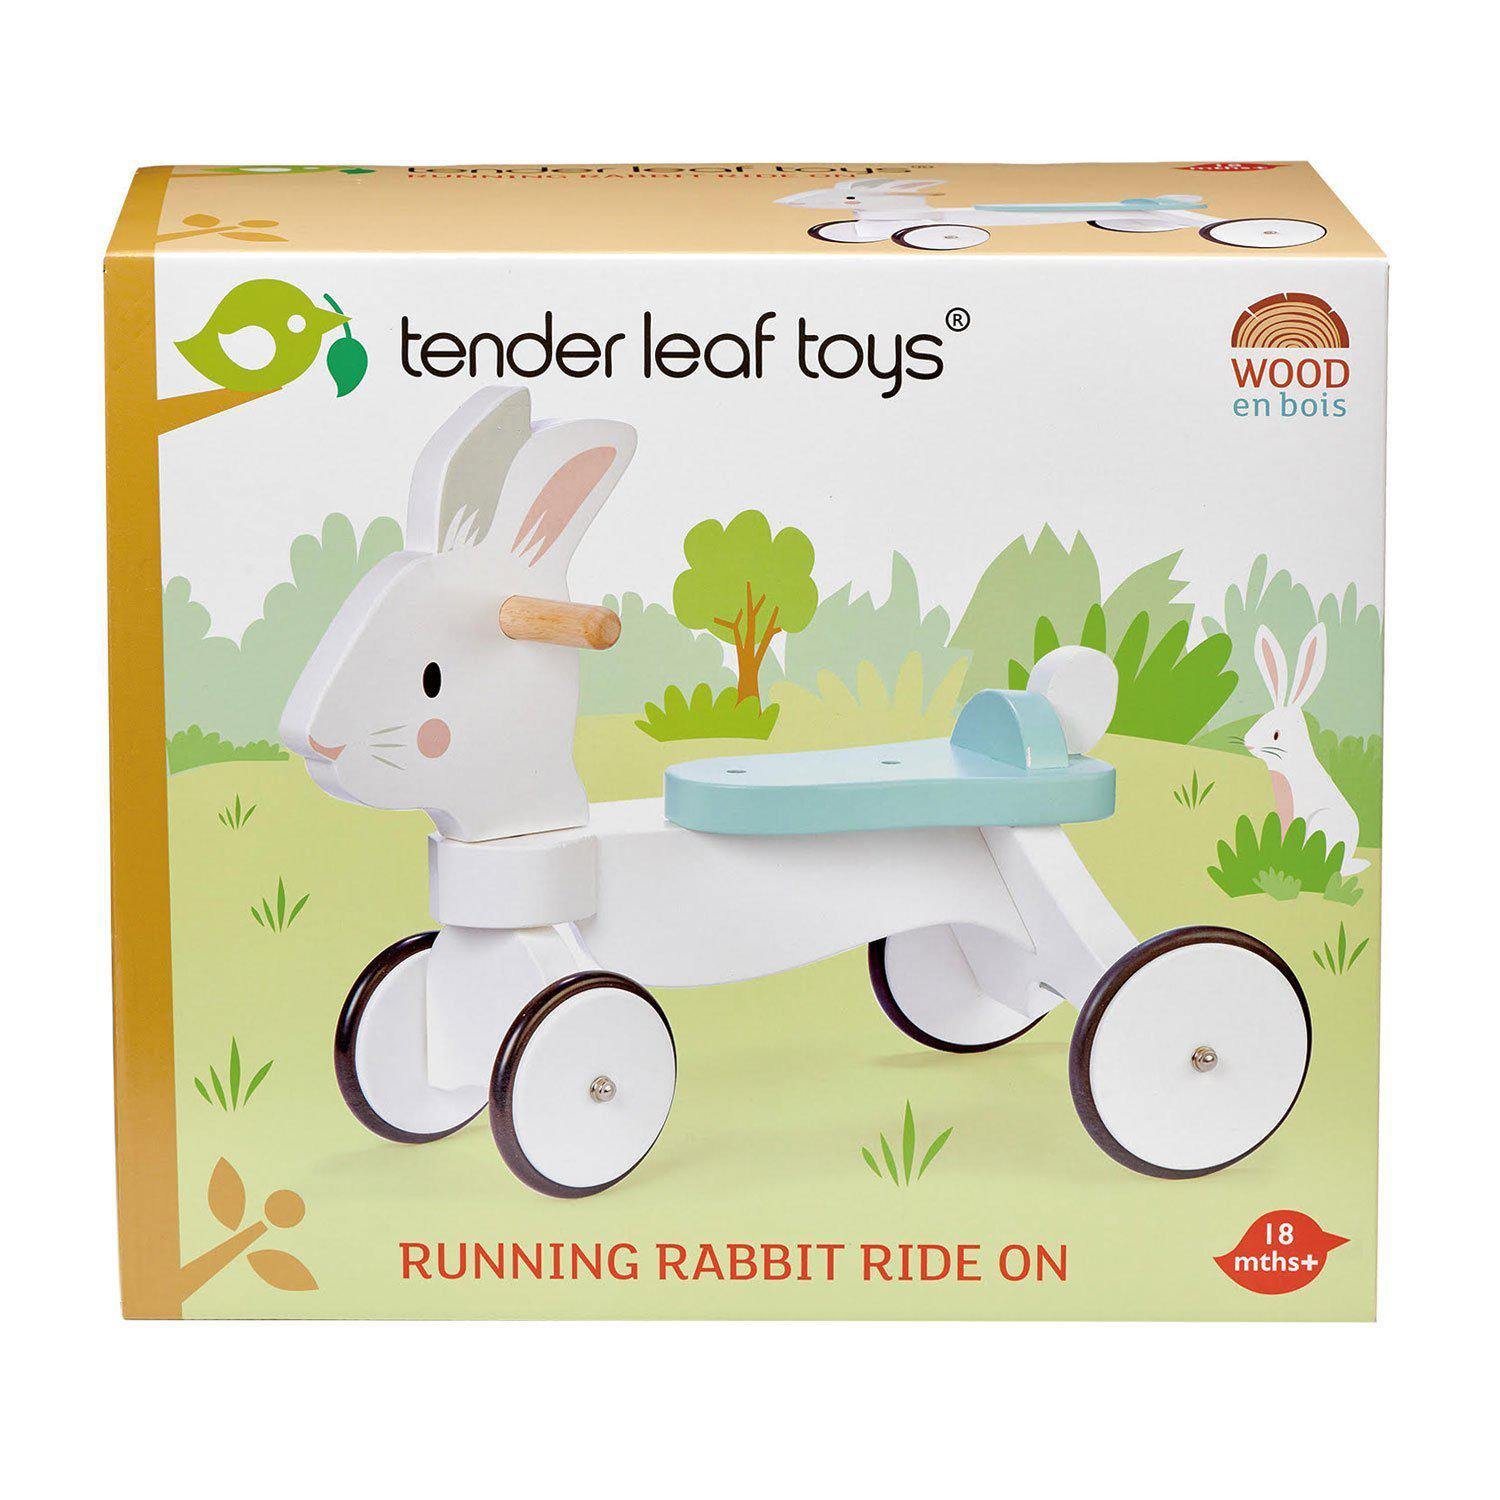 4 kerekű nyuszis járóka - Running Rabbit Ride on - Tender Leaf Toys-Tender Leaf Toys-1-Játszma.ro - A maradandó élmények boltja